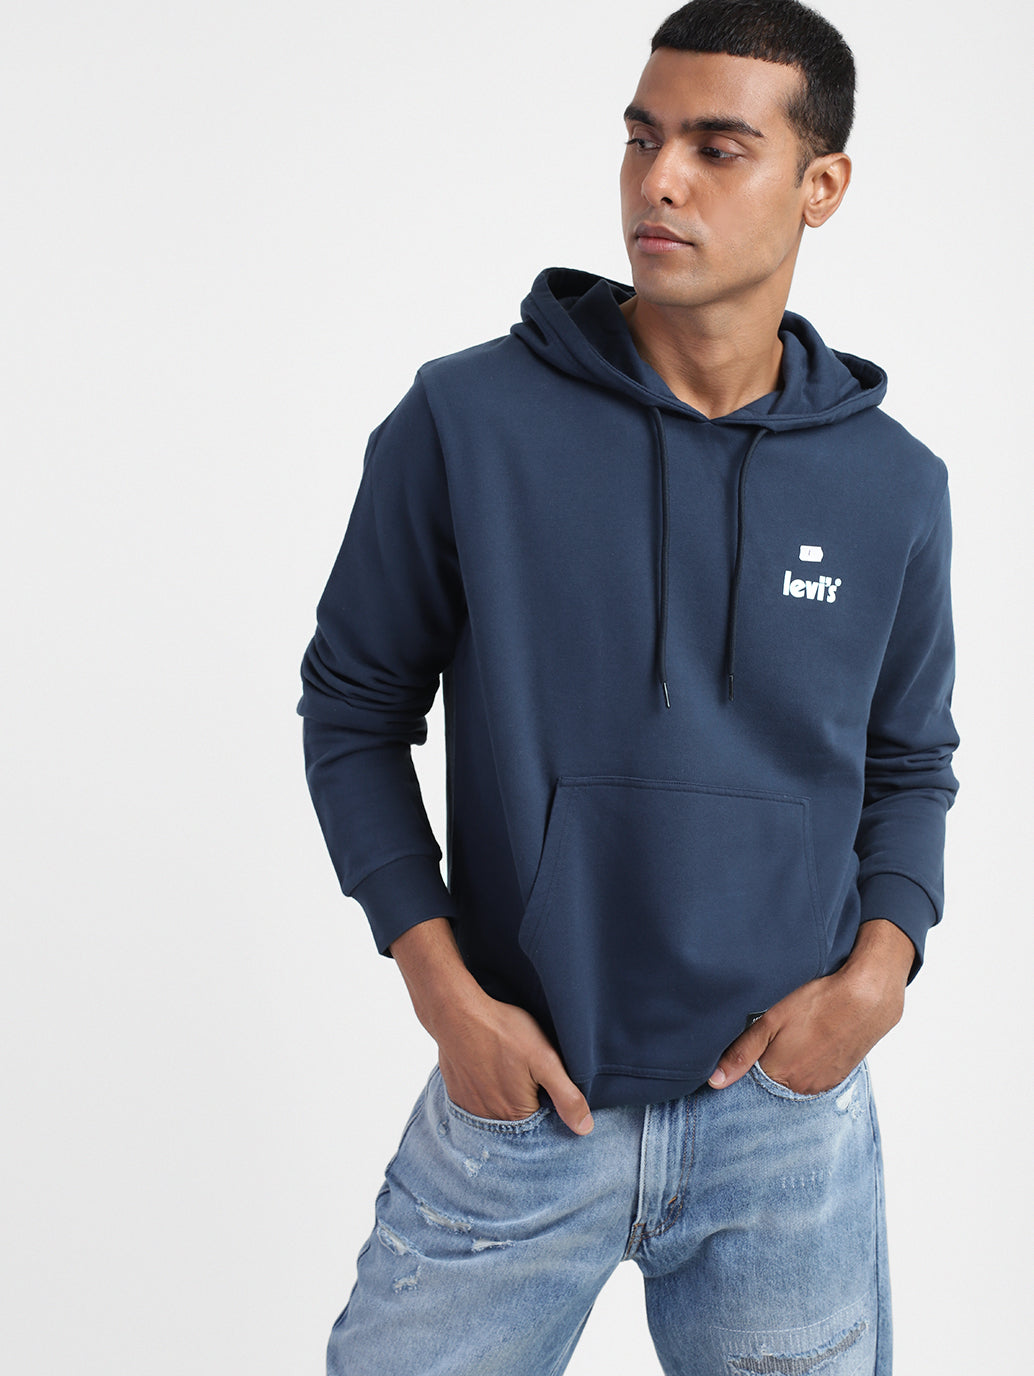 Men's Solid Hooded Sweatshirt